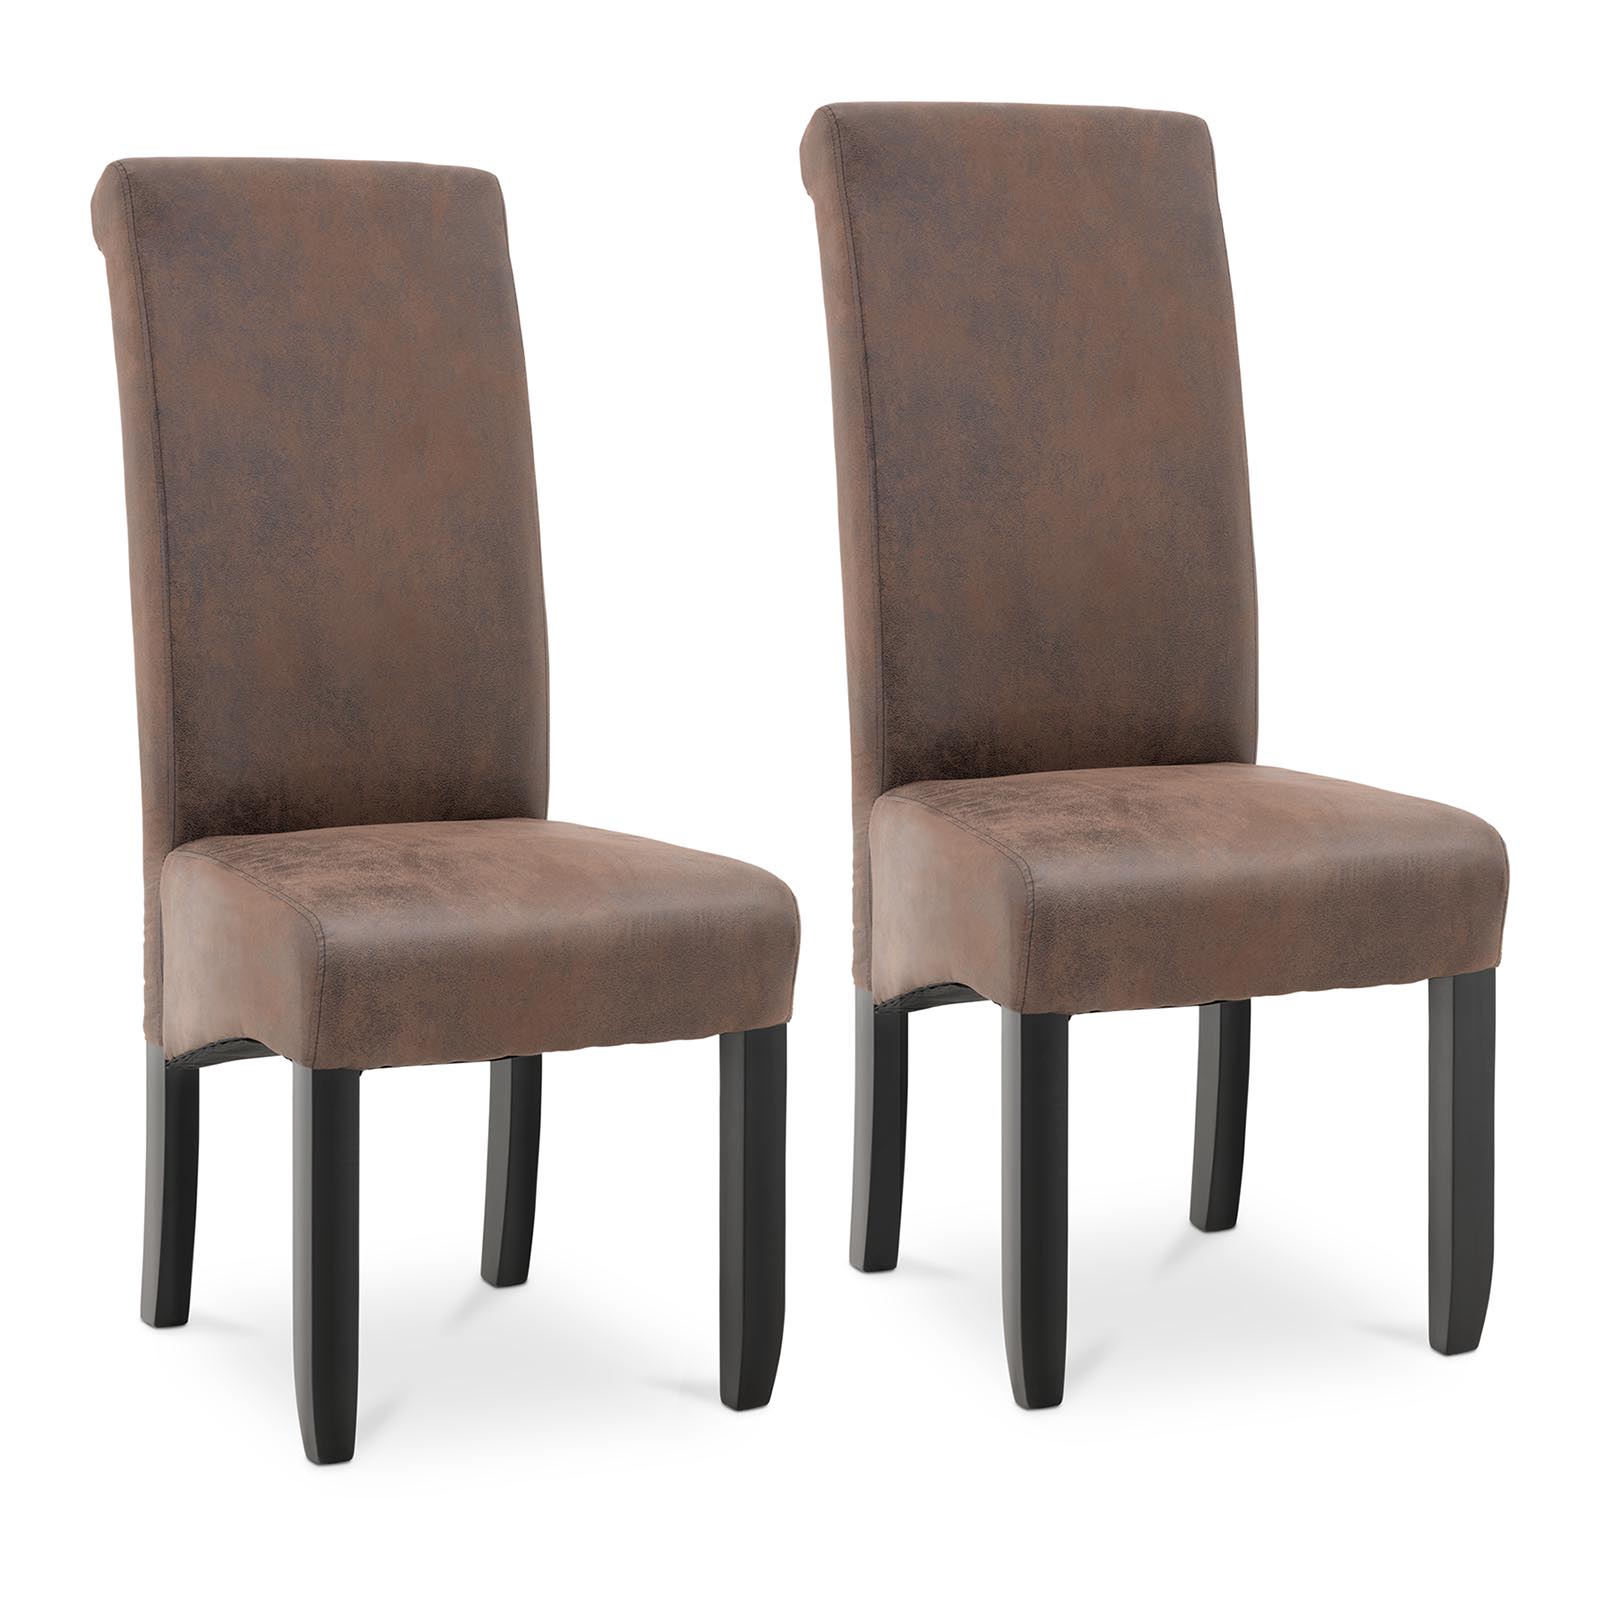 Cadeira estofada - marrom - 2 un.